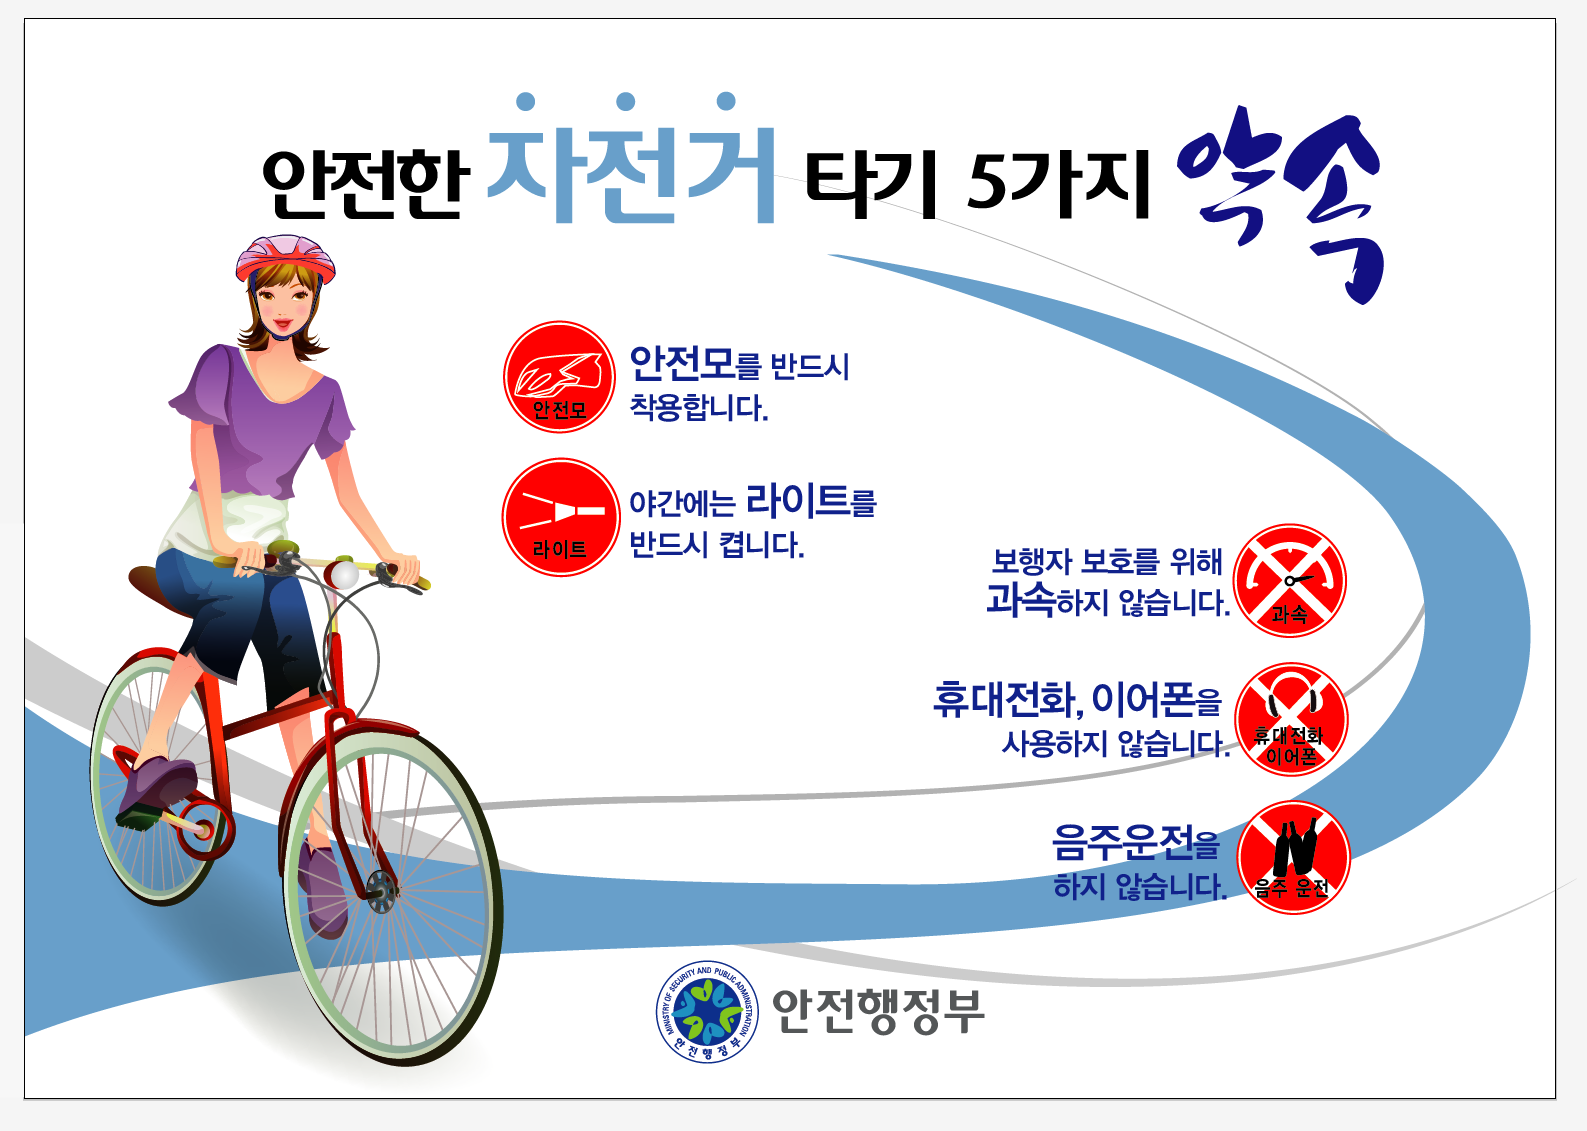 안전행정부 2014년 자전거 안전 포스터의 1번째 이미지